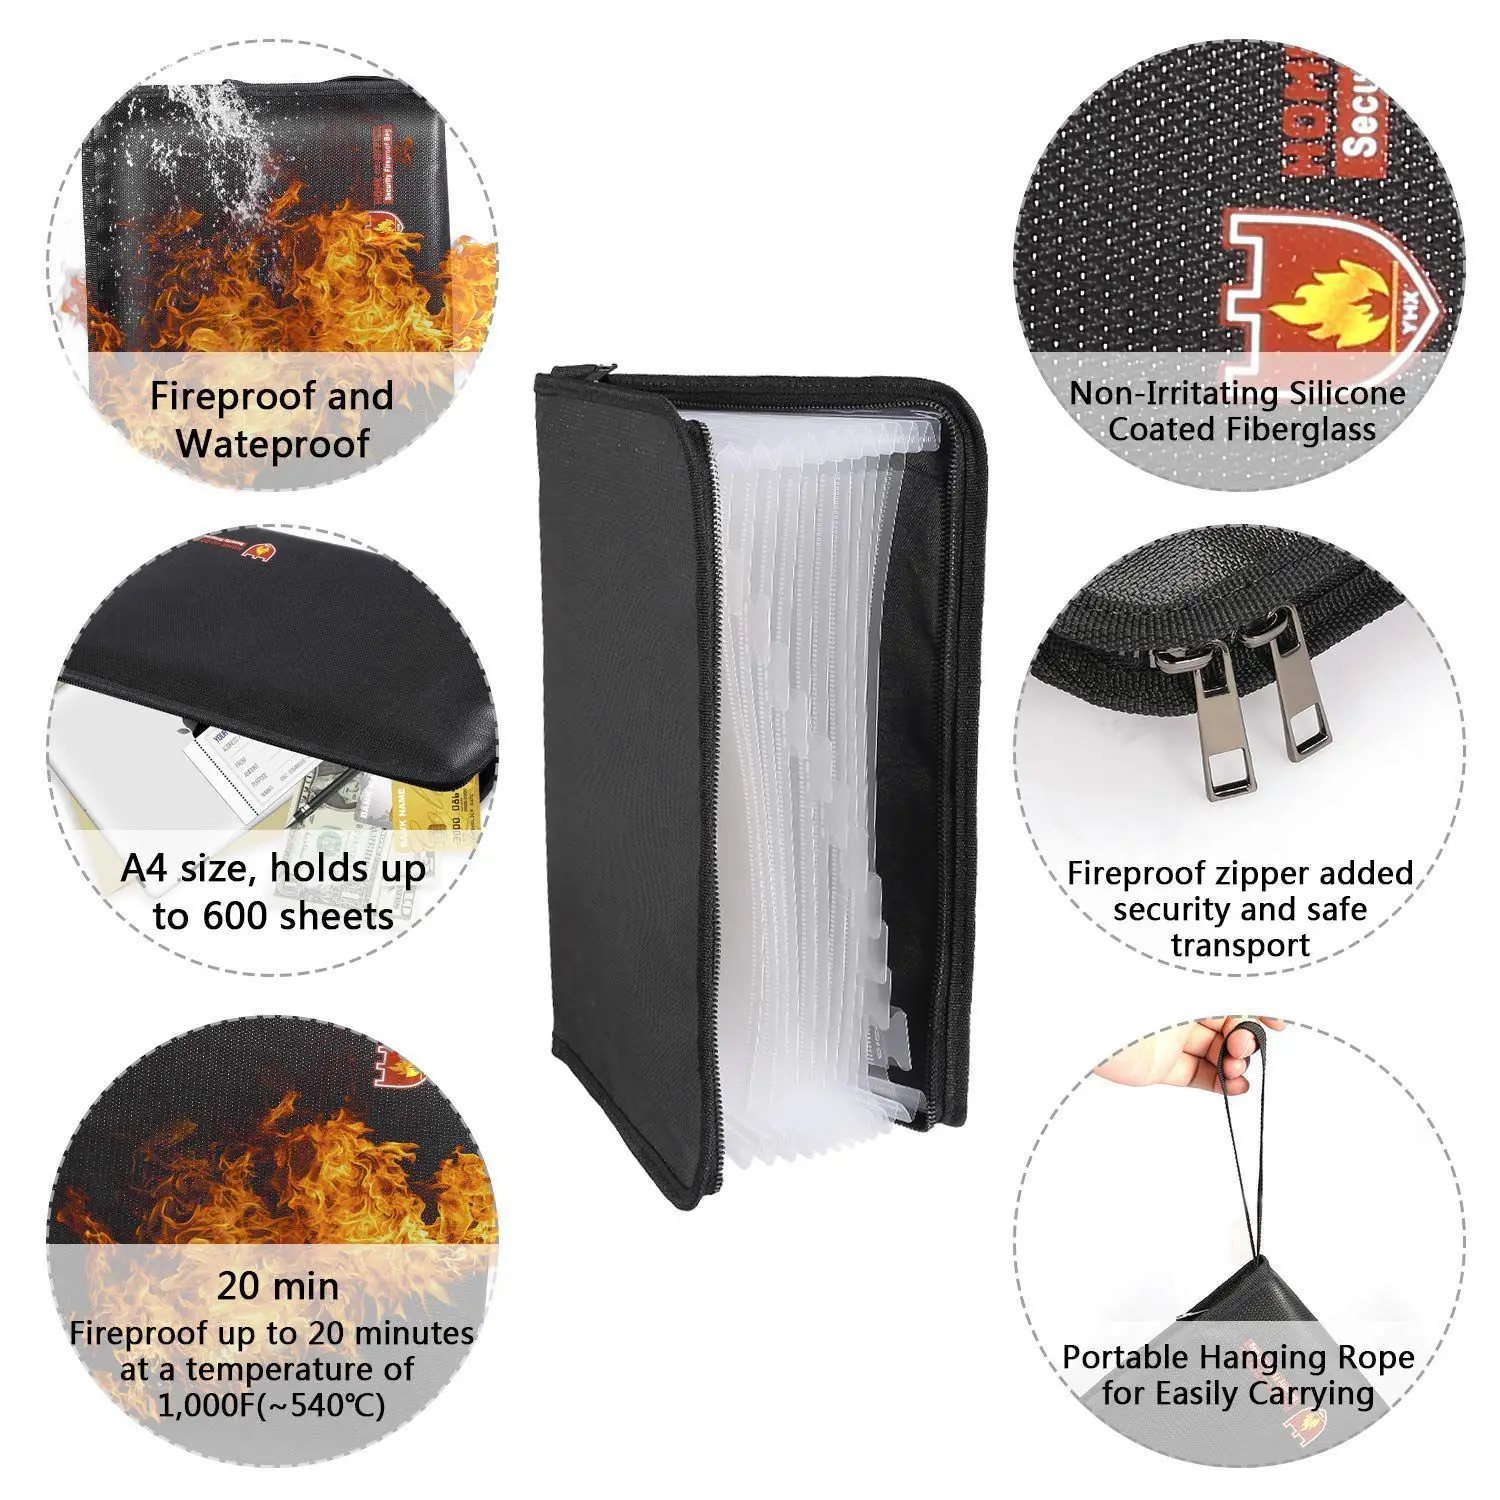 PPYY новый-противопожарные папке файлов аккордеон документа сумки 14.3x 9,8 дюйма A4 Размер 12 карманов-зуд с силиконовым покрытием огня